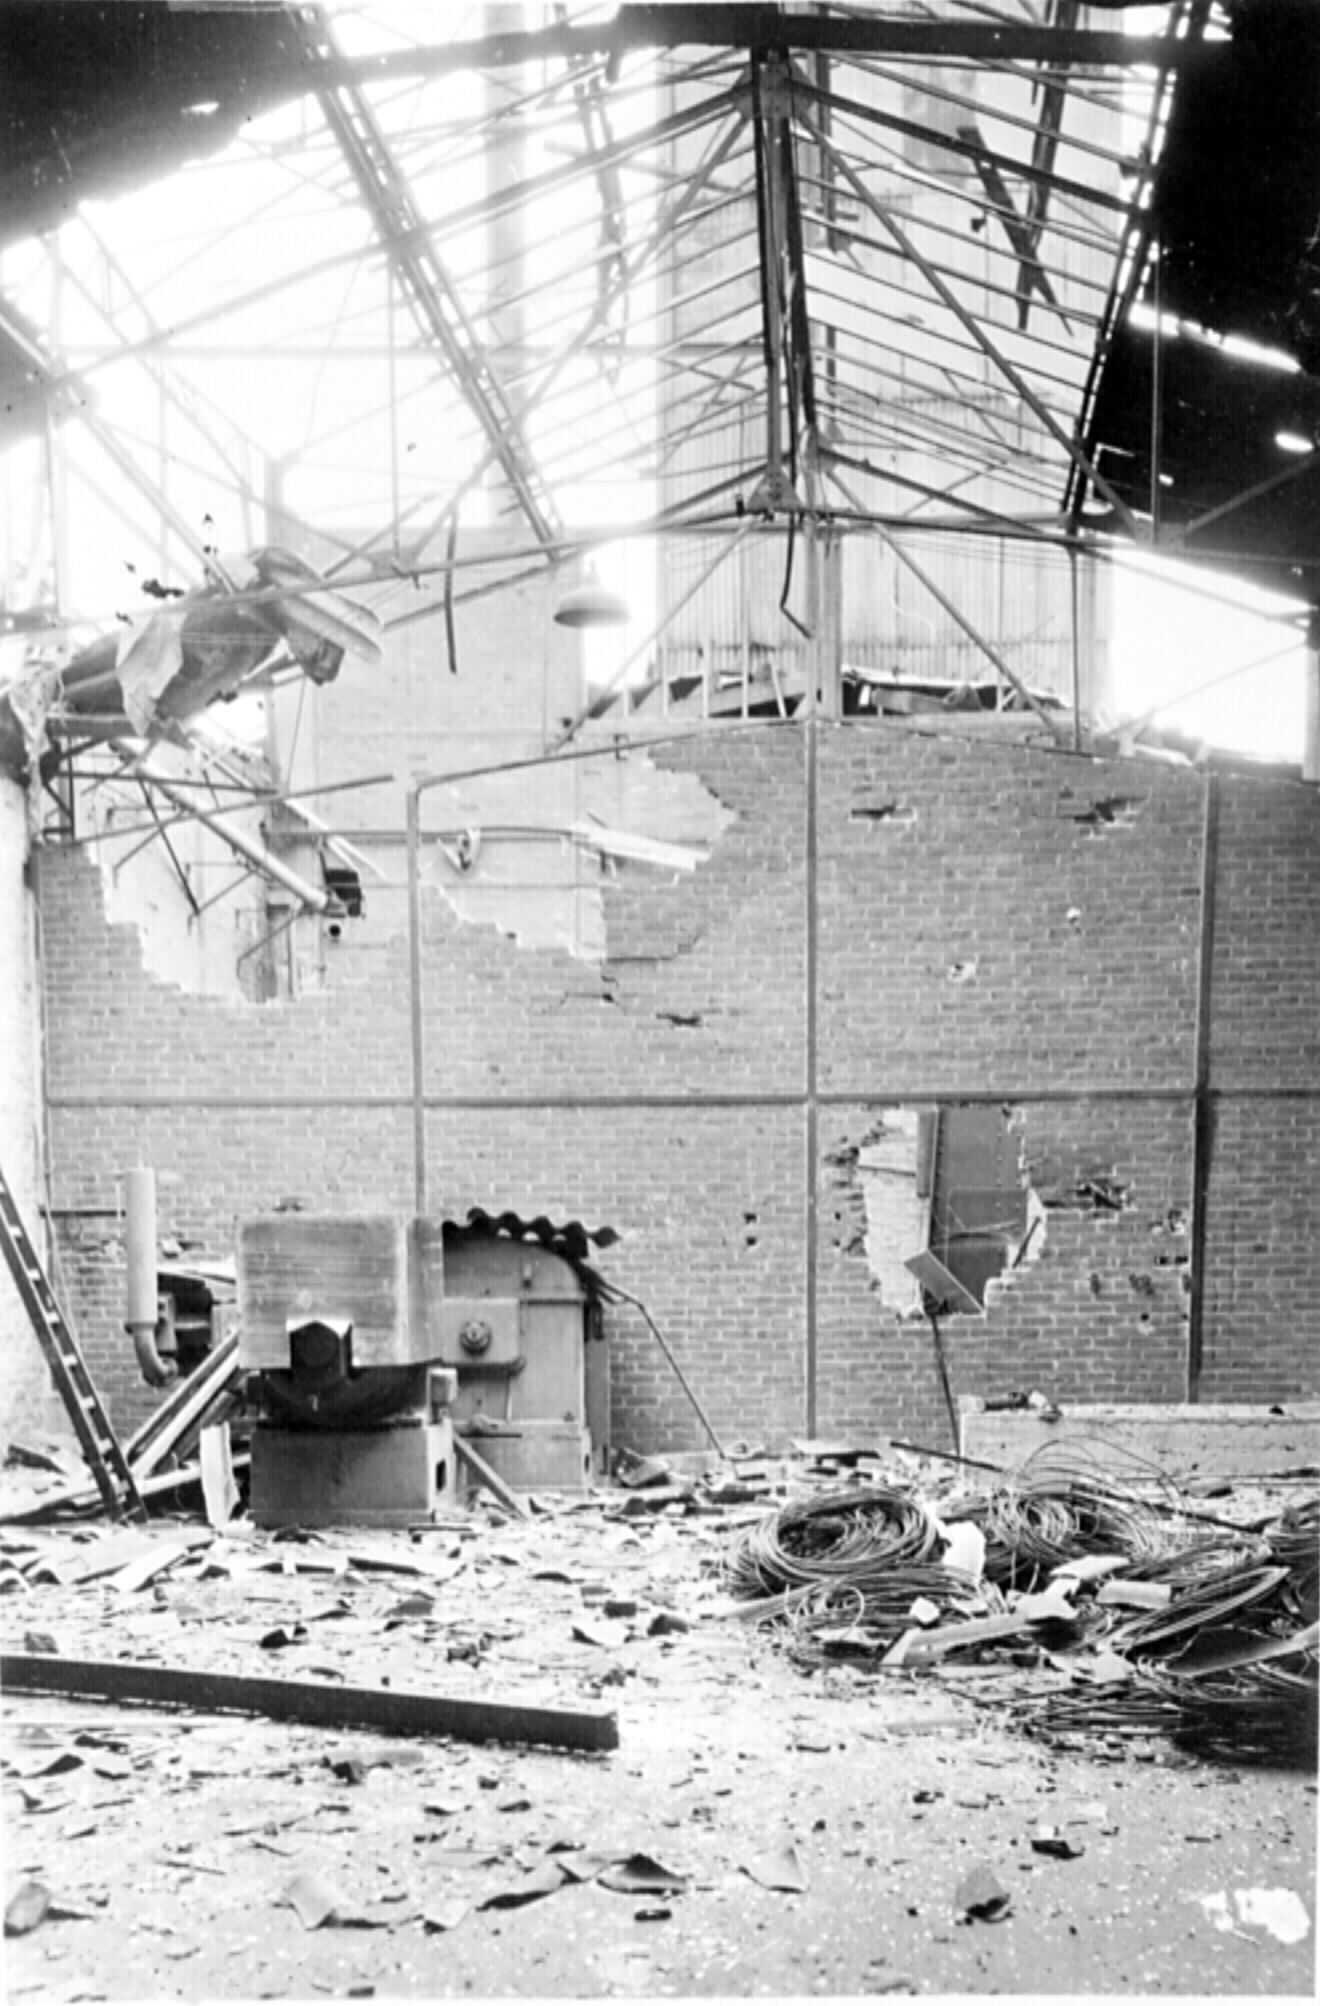 Photographie en noir et blanc de l'intérieur d'une usine détruite par la Résistance